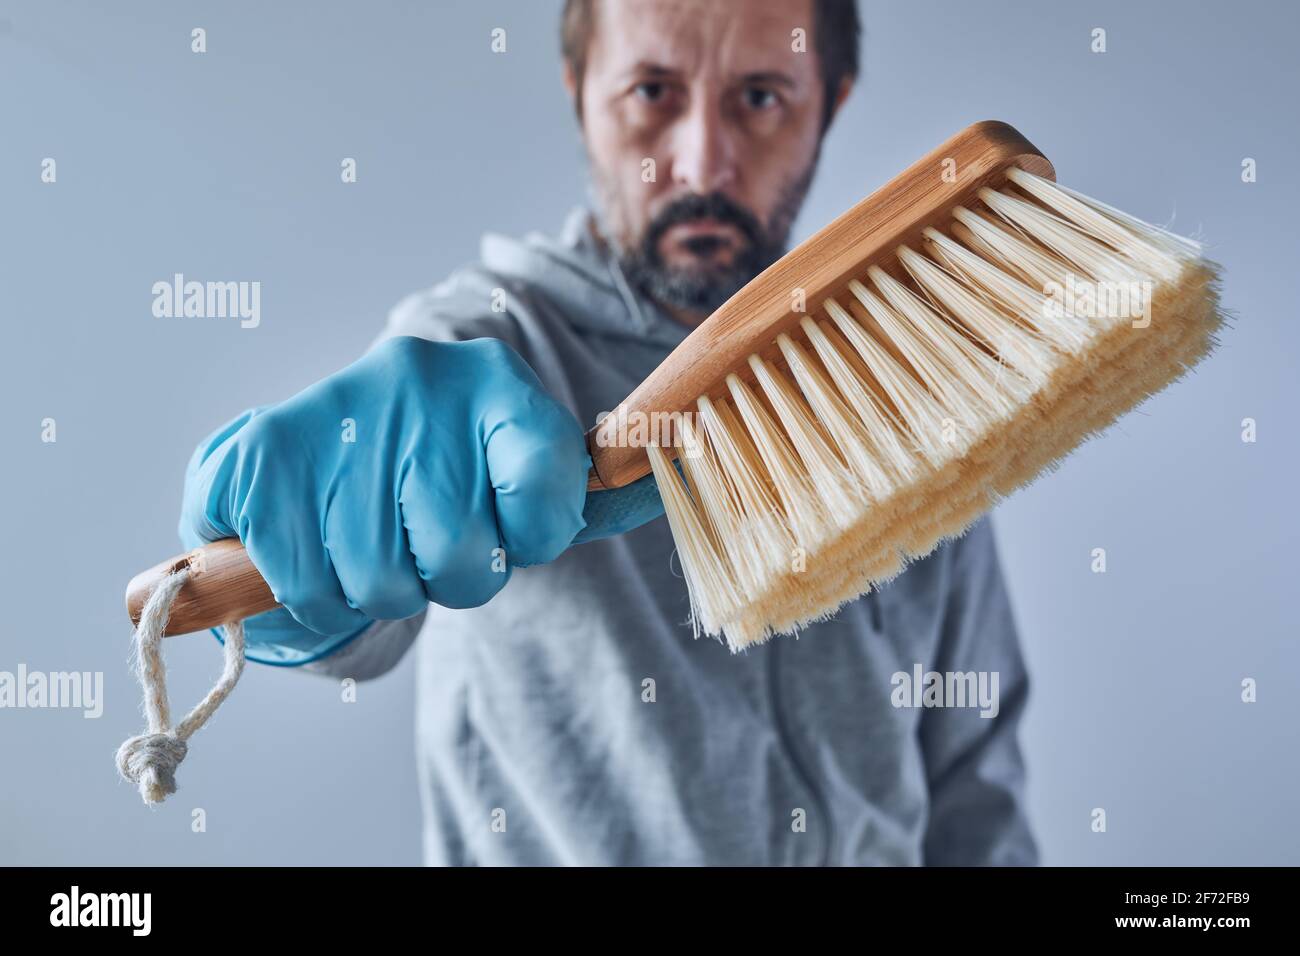 Prêt pour le nettoyage de la maison, homme avec équipement de nettoyage de brosse Banque D'Images